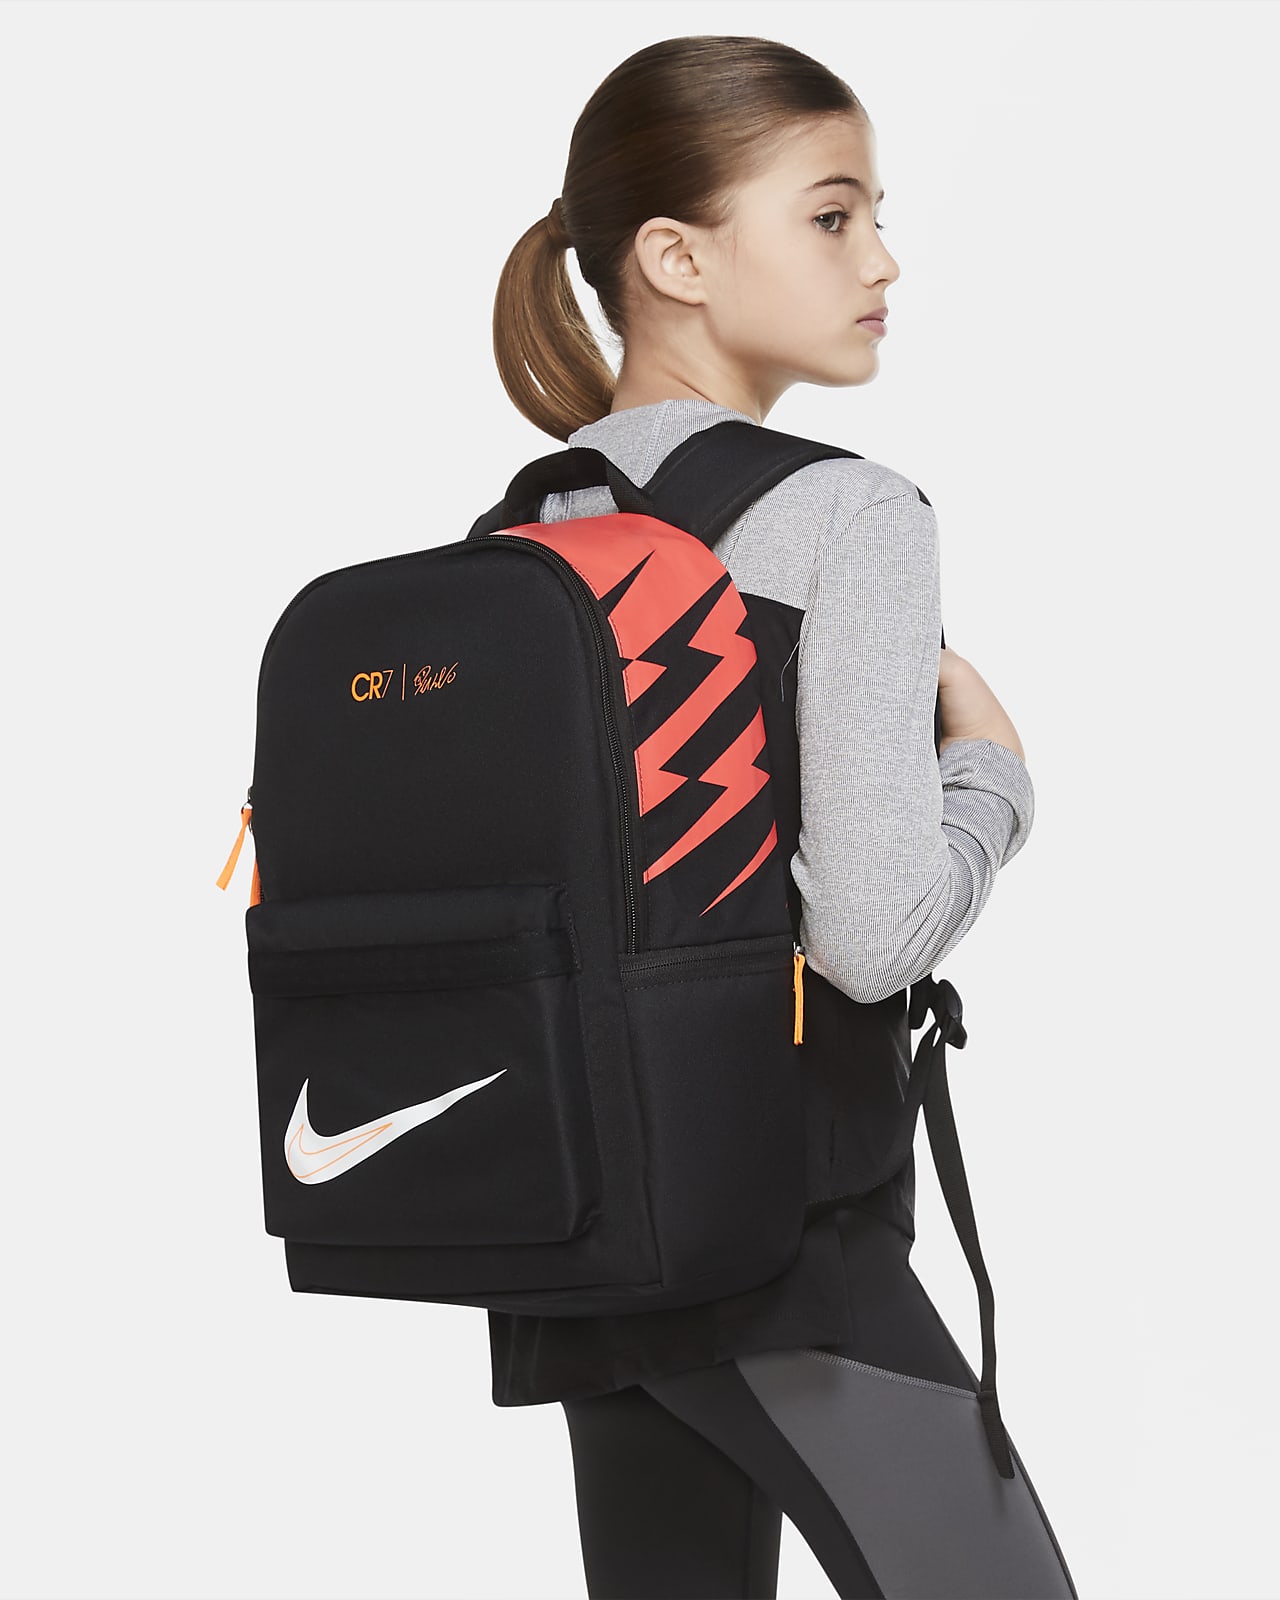 Nike公式 Cr7 キッズ サッカーバックパック オンラインストア 通販サイト